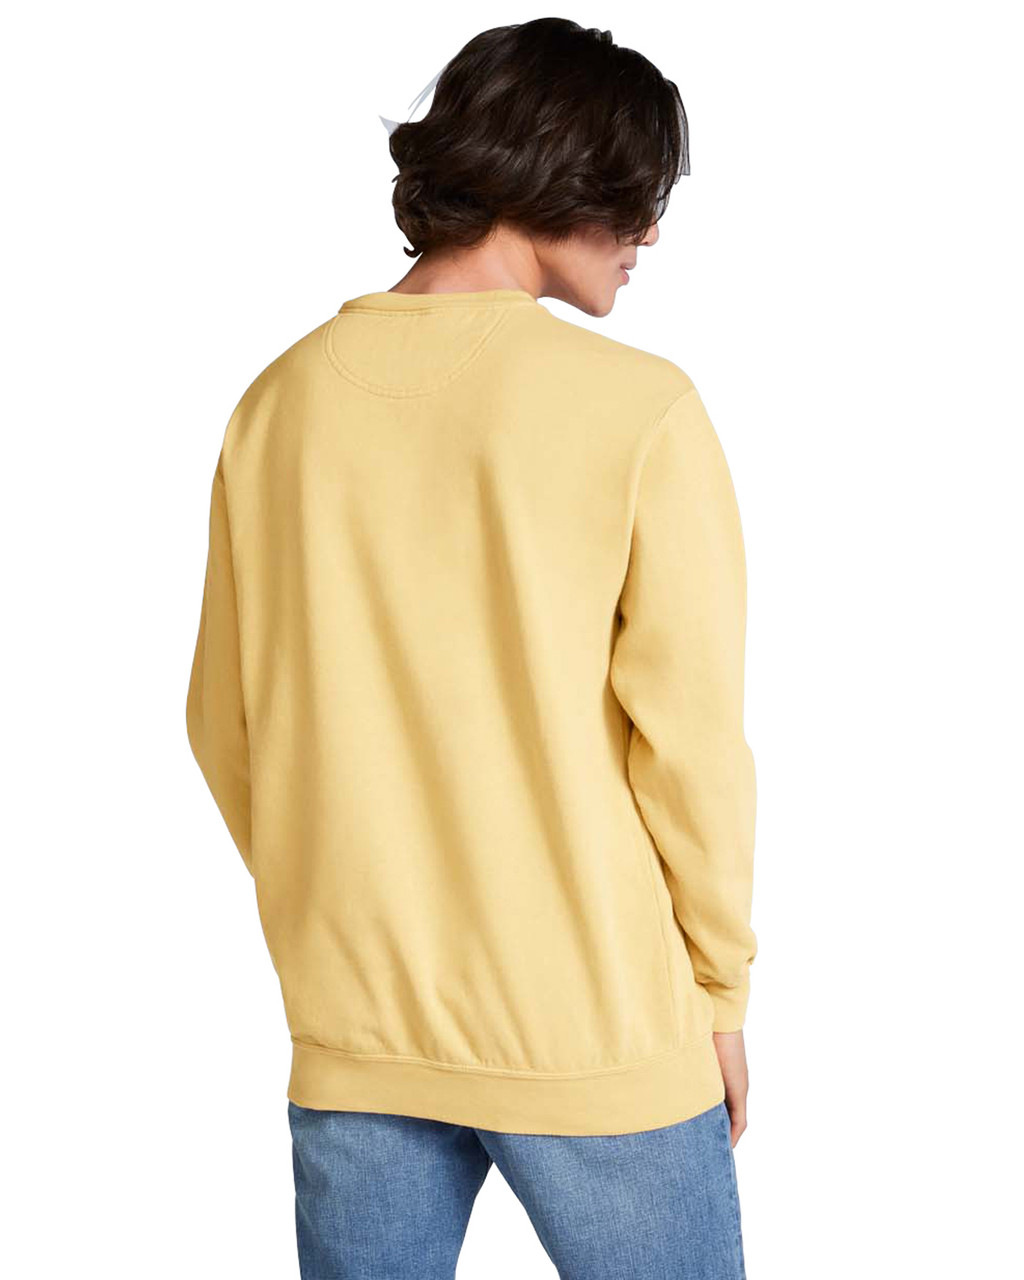 TSC Apparel Large Monogram Comfort Colors Adult Crew-Neck Sweatshirt #1566 | Wholesale Accessory Market S / Blue Jean - CC